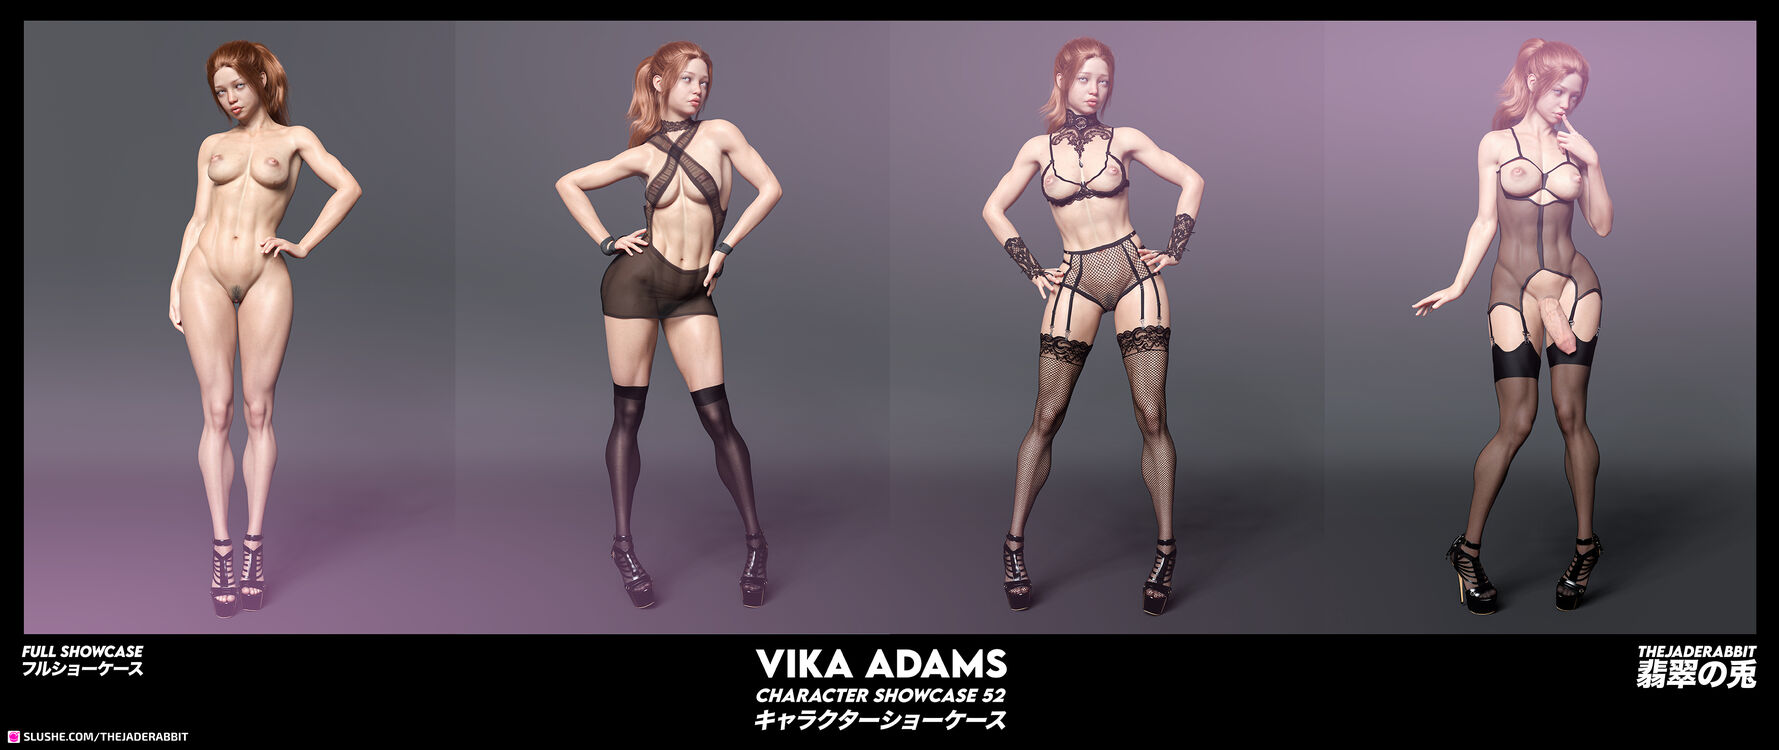 052 - Vika Adams - Full Showcase